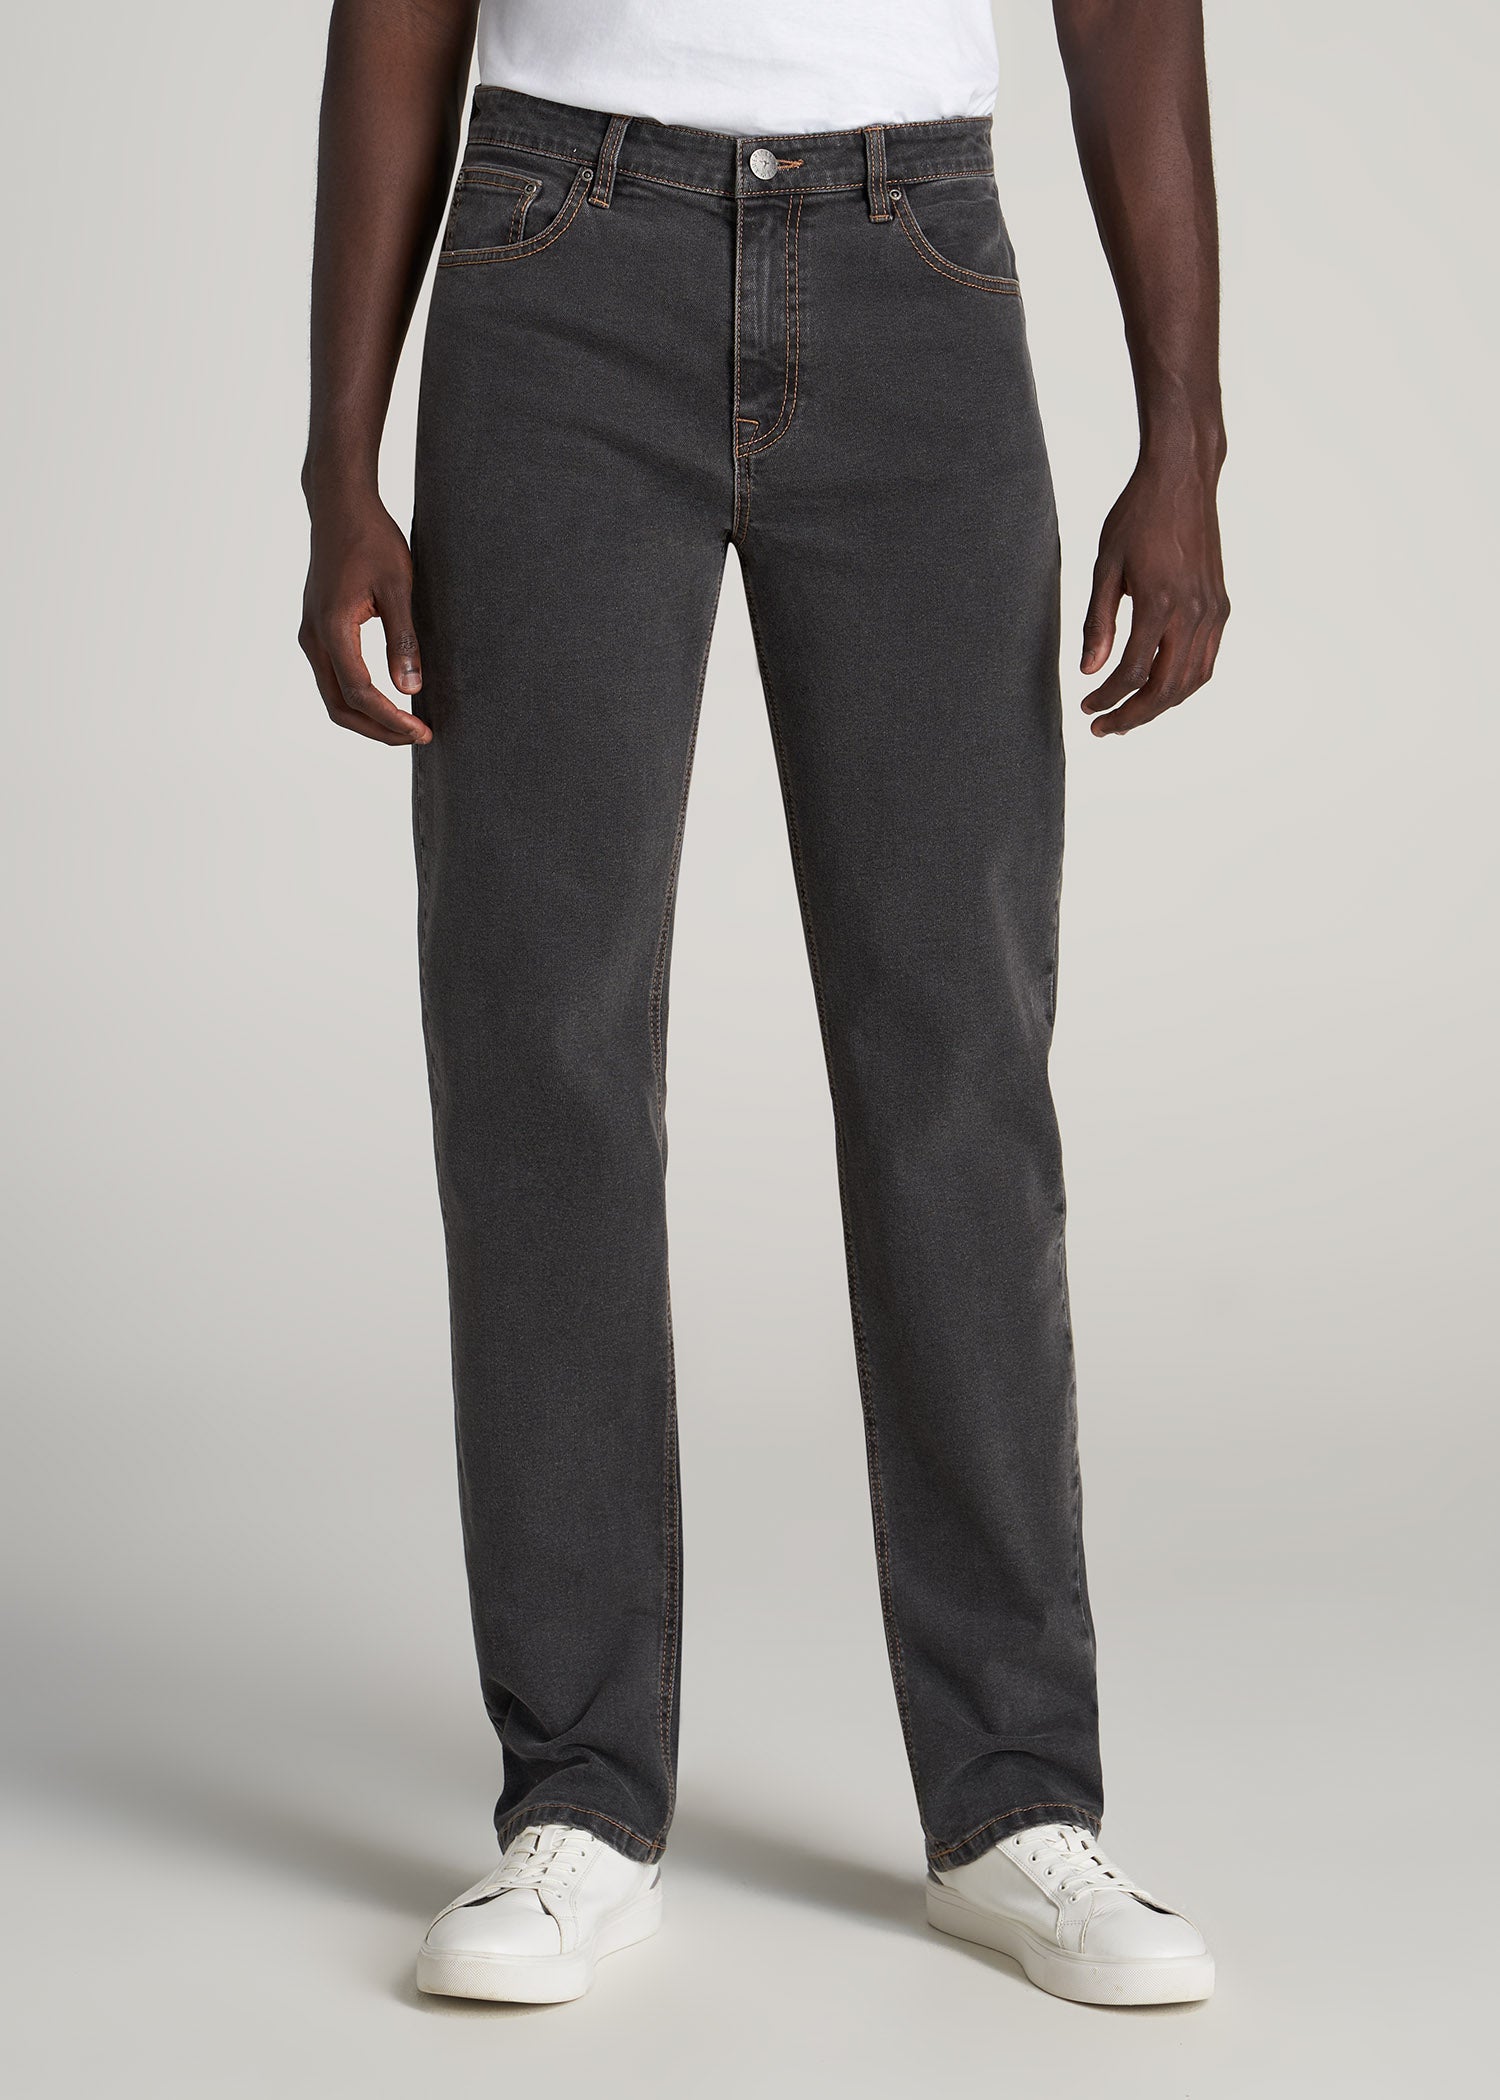 J1 STRAIGHT LEG Jeans for Tall Men in Dark Grey Denim